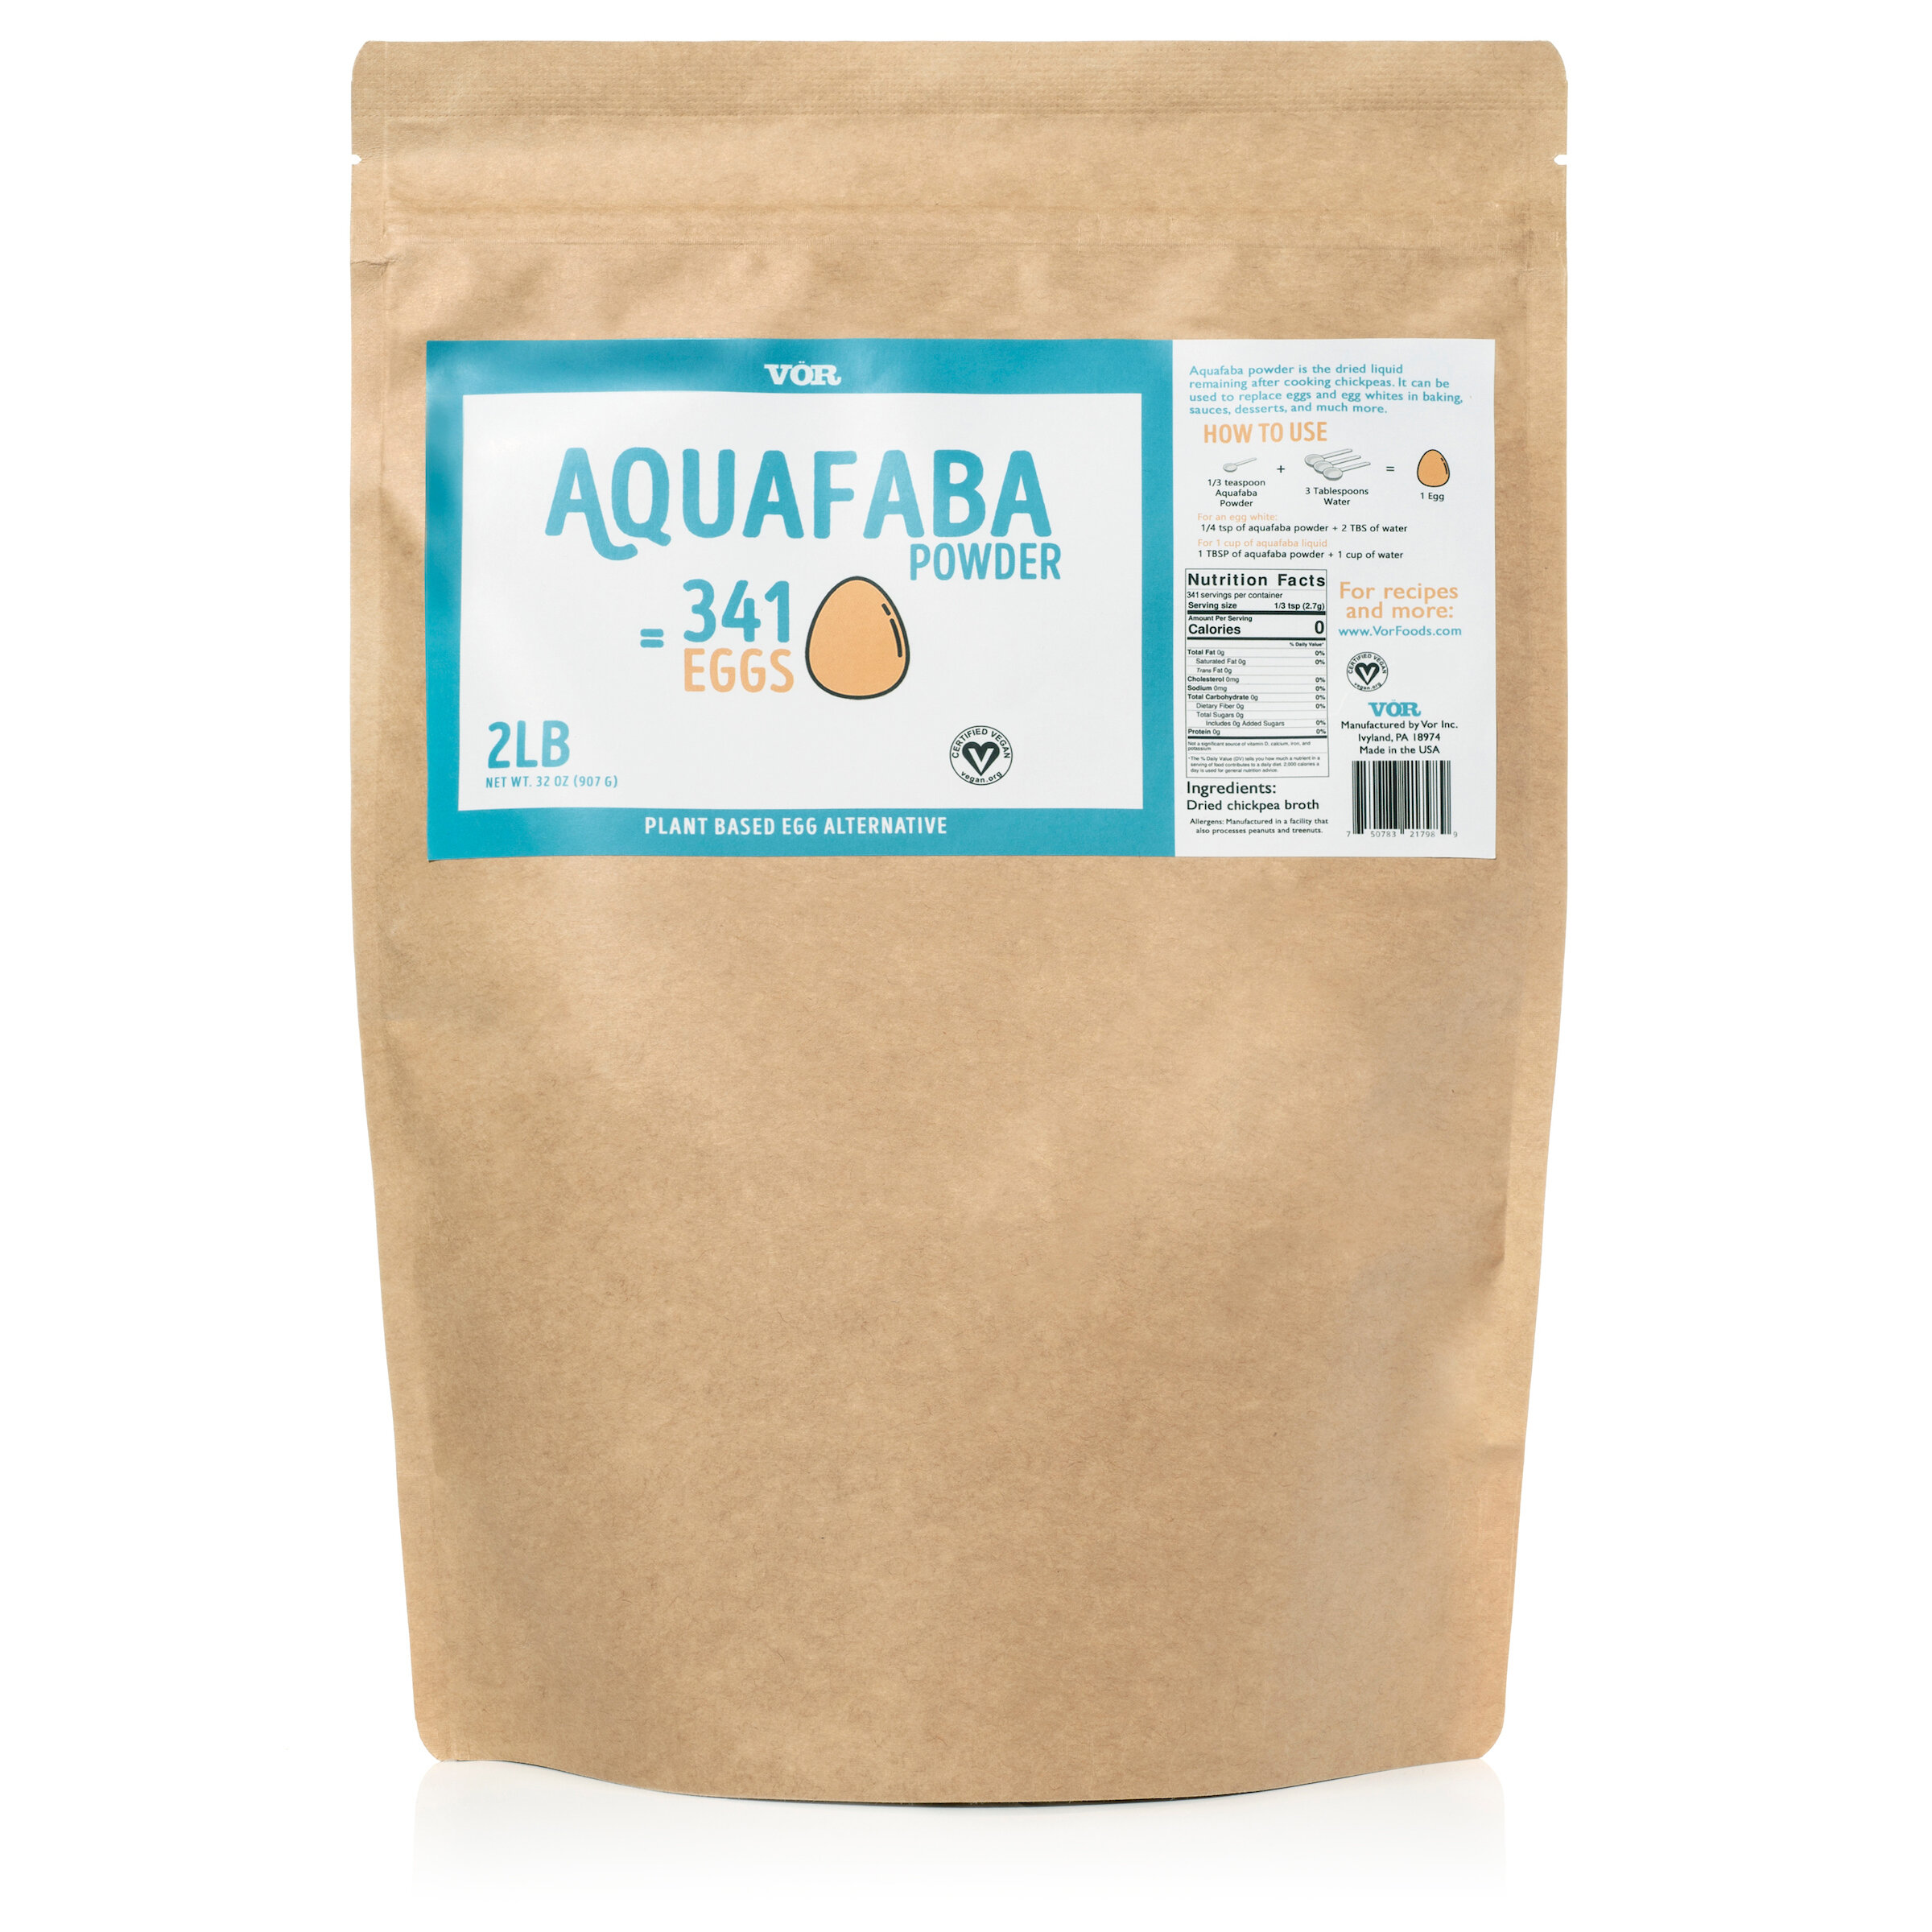 Vor Aquafaba Powder 2lb Bag